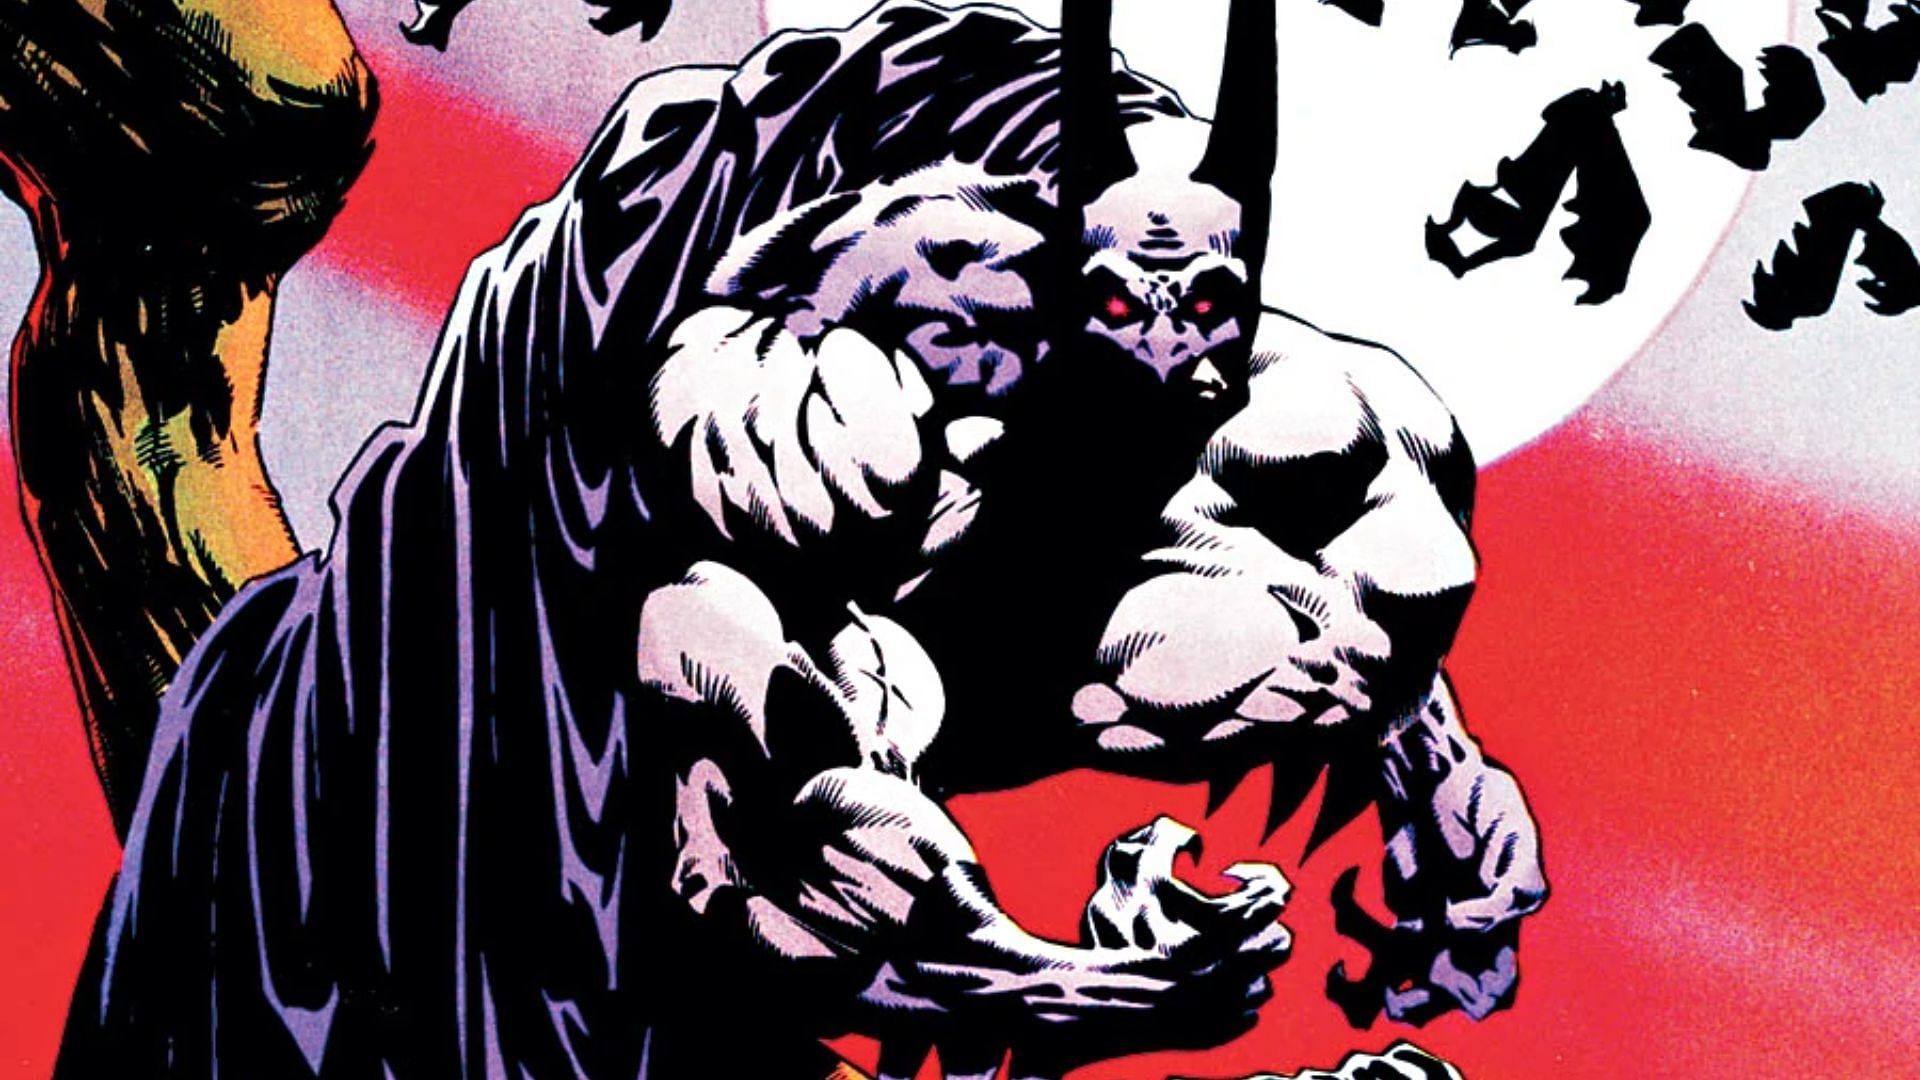 Batman on the cover of Batman: Bloodstorm (Image Credits: DC Comics)